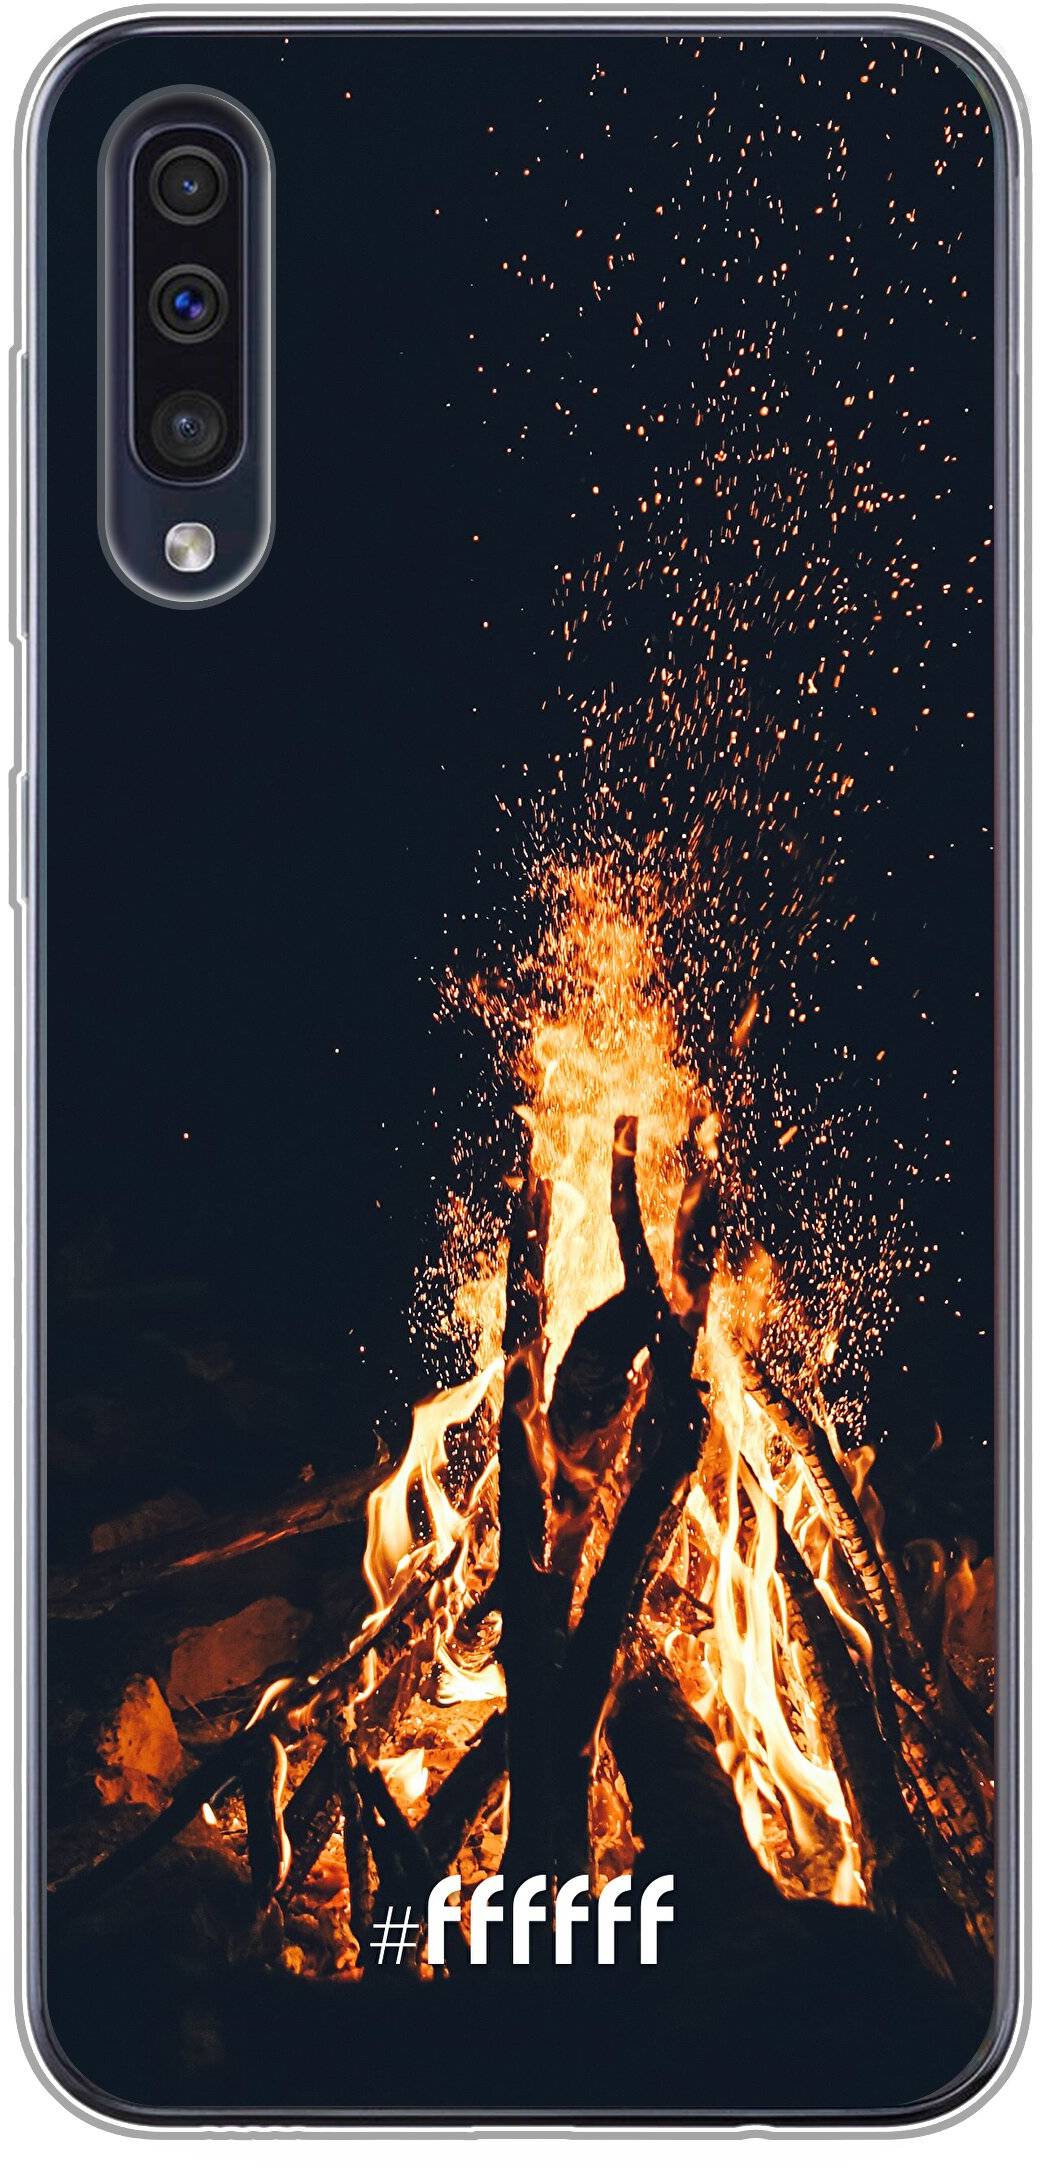 Bonfire Galaxy A30s